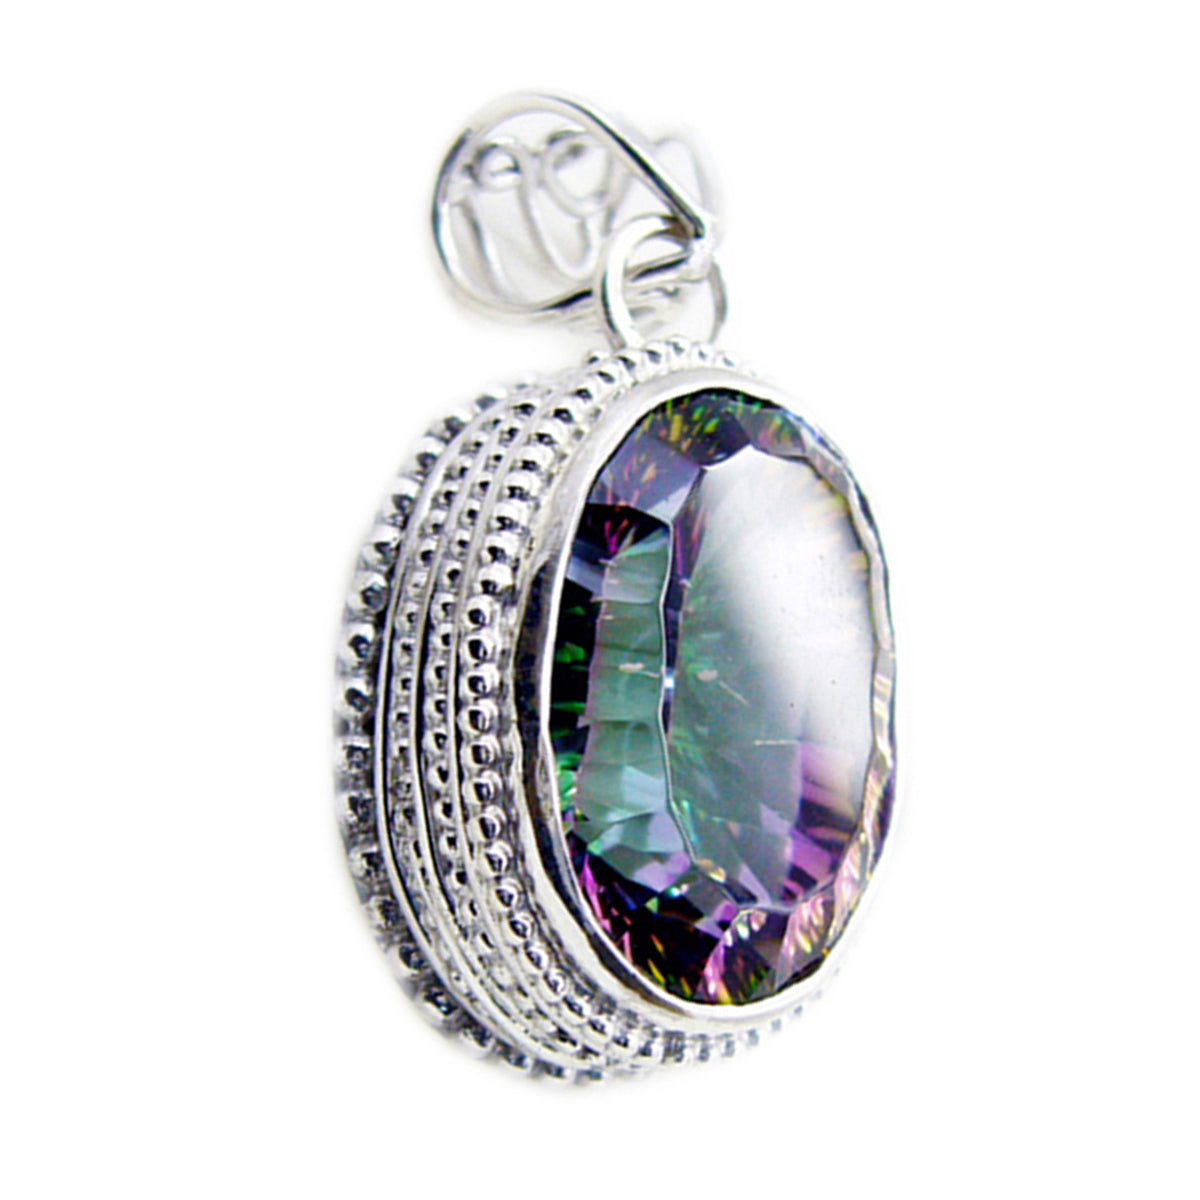 Riyo encantadora piedra preciosa ovalada facetada multicolor cuarzo místico colgante de plata de ley regalo para mujer